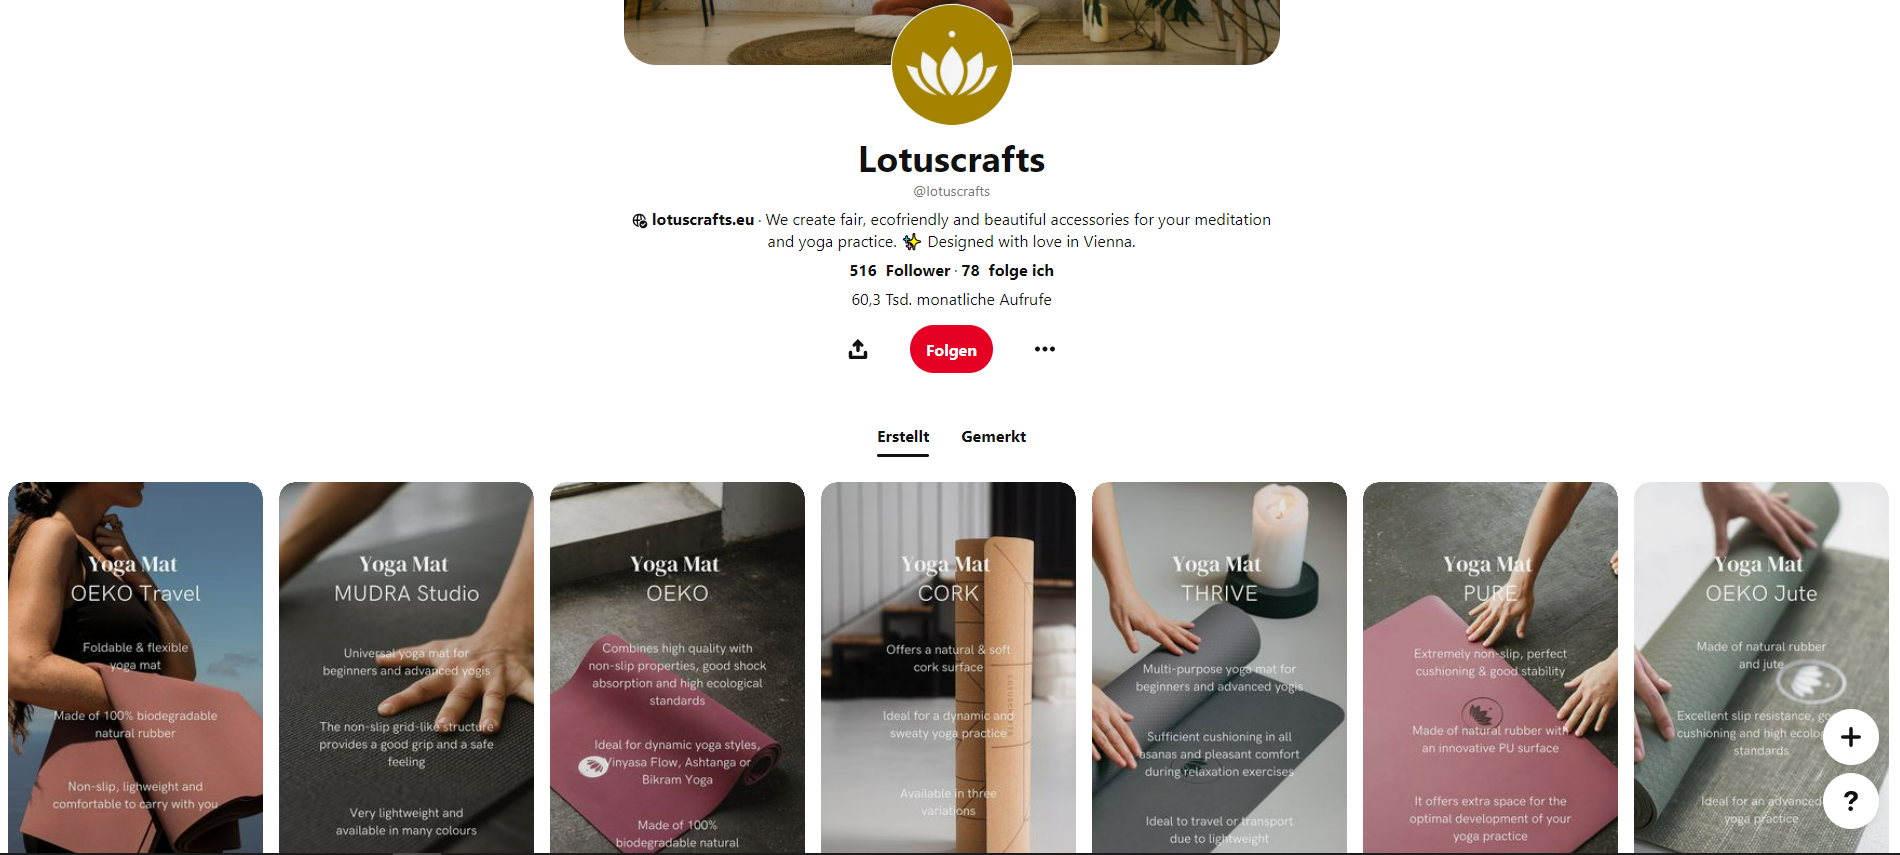 Das Pinterest-Board des Onlinehändlers Lotuscraft. Bei Pinterest ist Social Commerce möglich.